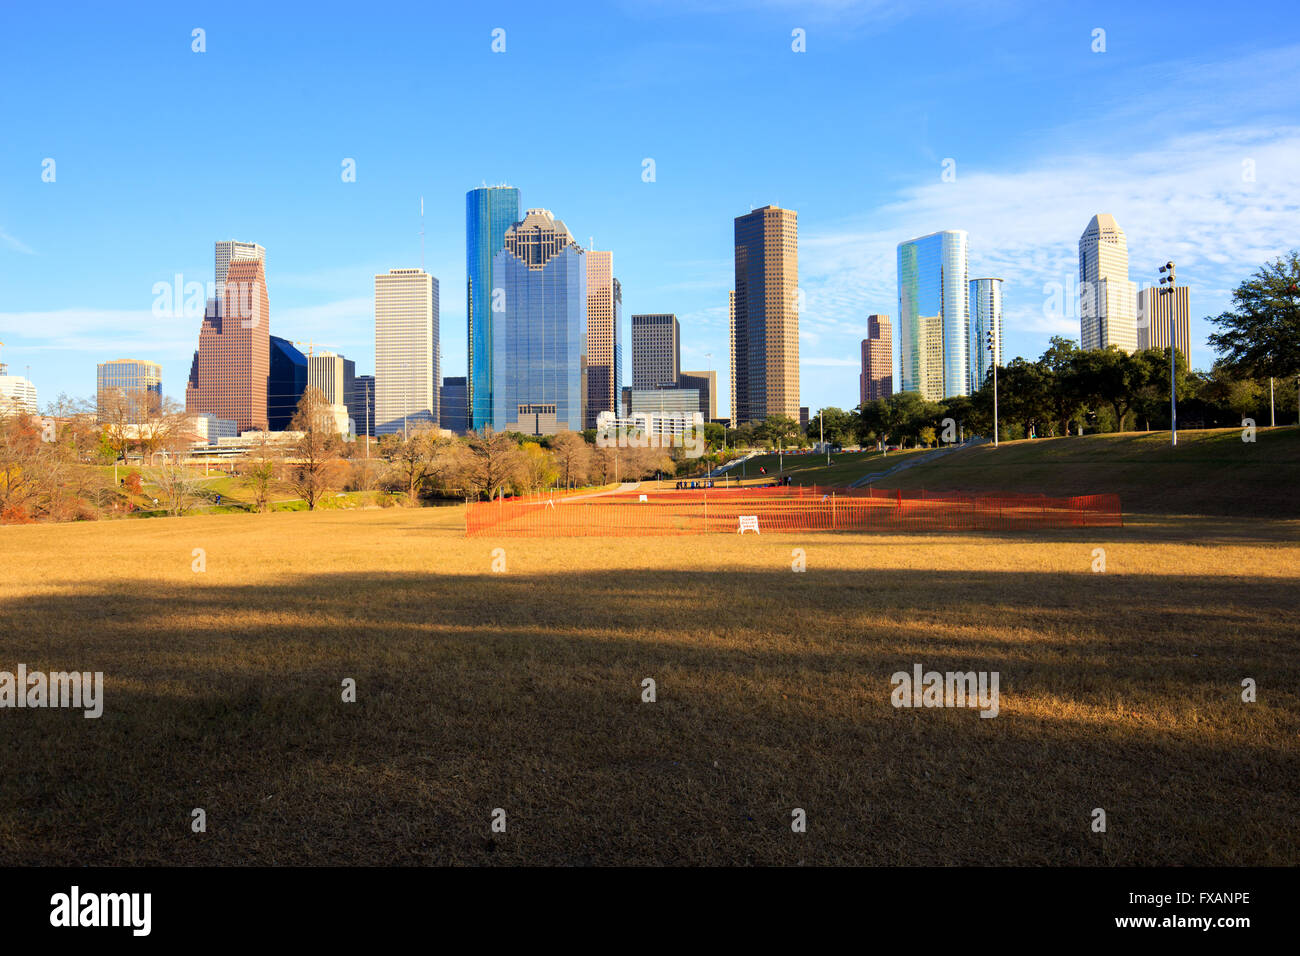 Belle vue sur le centre-ville de Houston en une journée ensoleillée. Houston est la ville la plus populeuse au Texas. Banque D'Images